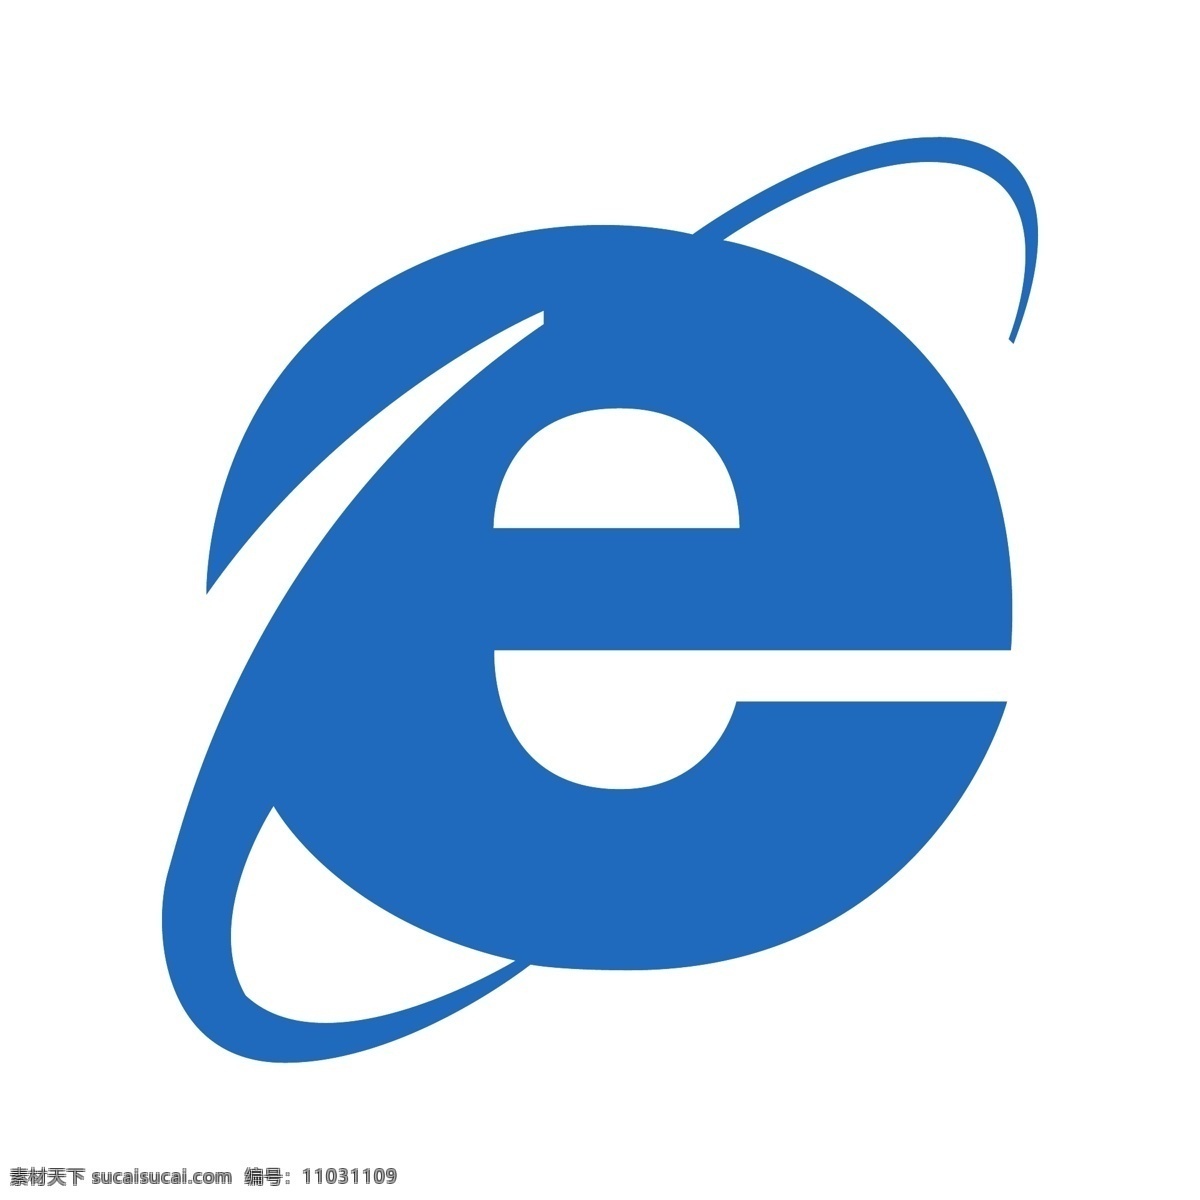 ie 浏览器 internet explorer logo ie浏览器 浏览器图标 矢量logo logo设计 创意设计 设计素材 标识 企业标识 图标 标志矢量 标志图标 其他图标